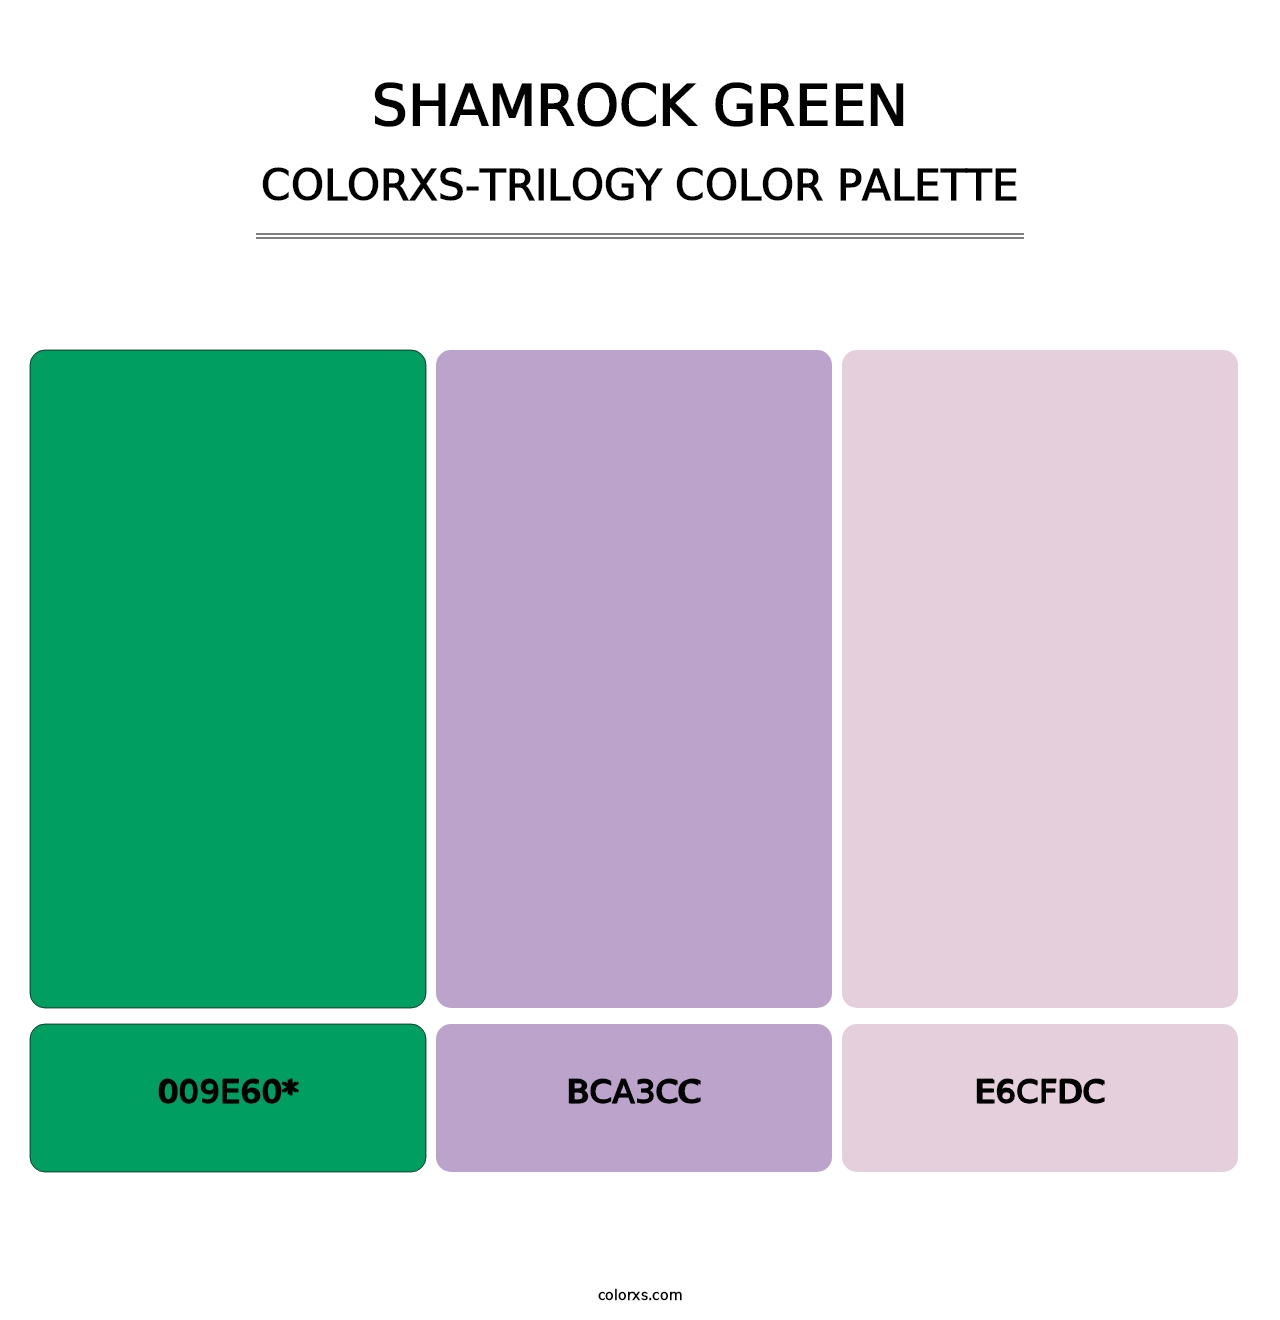 Shamrock Green - Colorxs Trilogy Palette